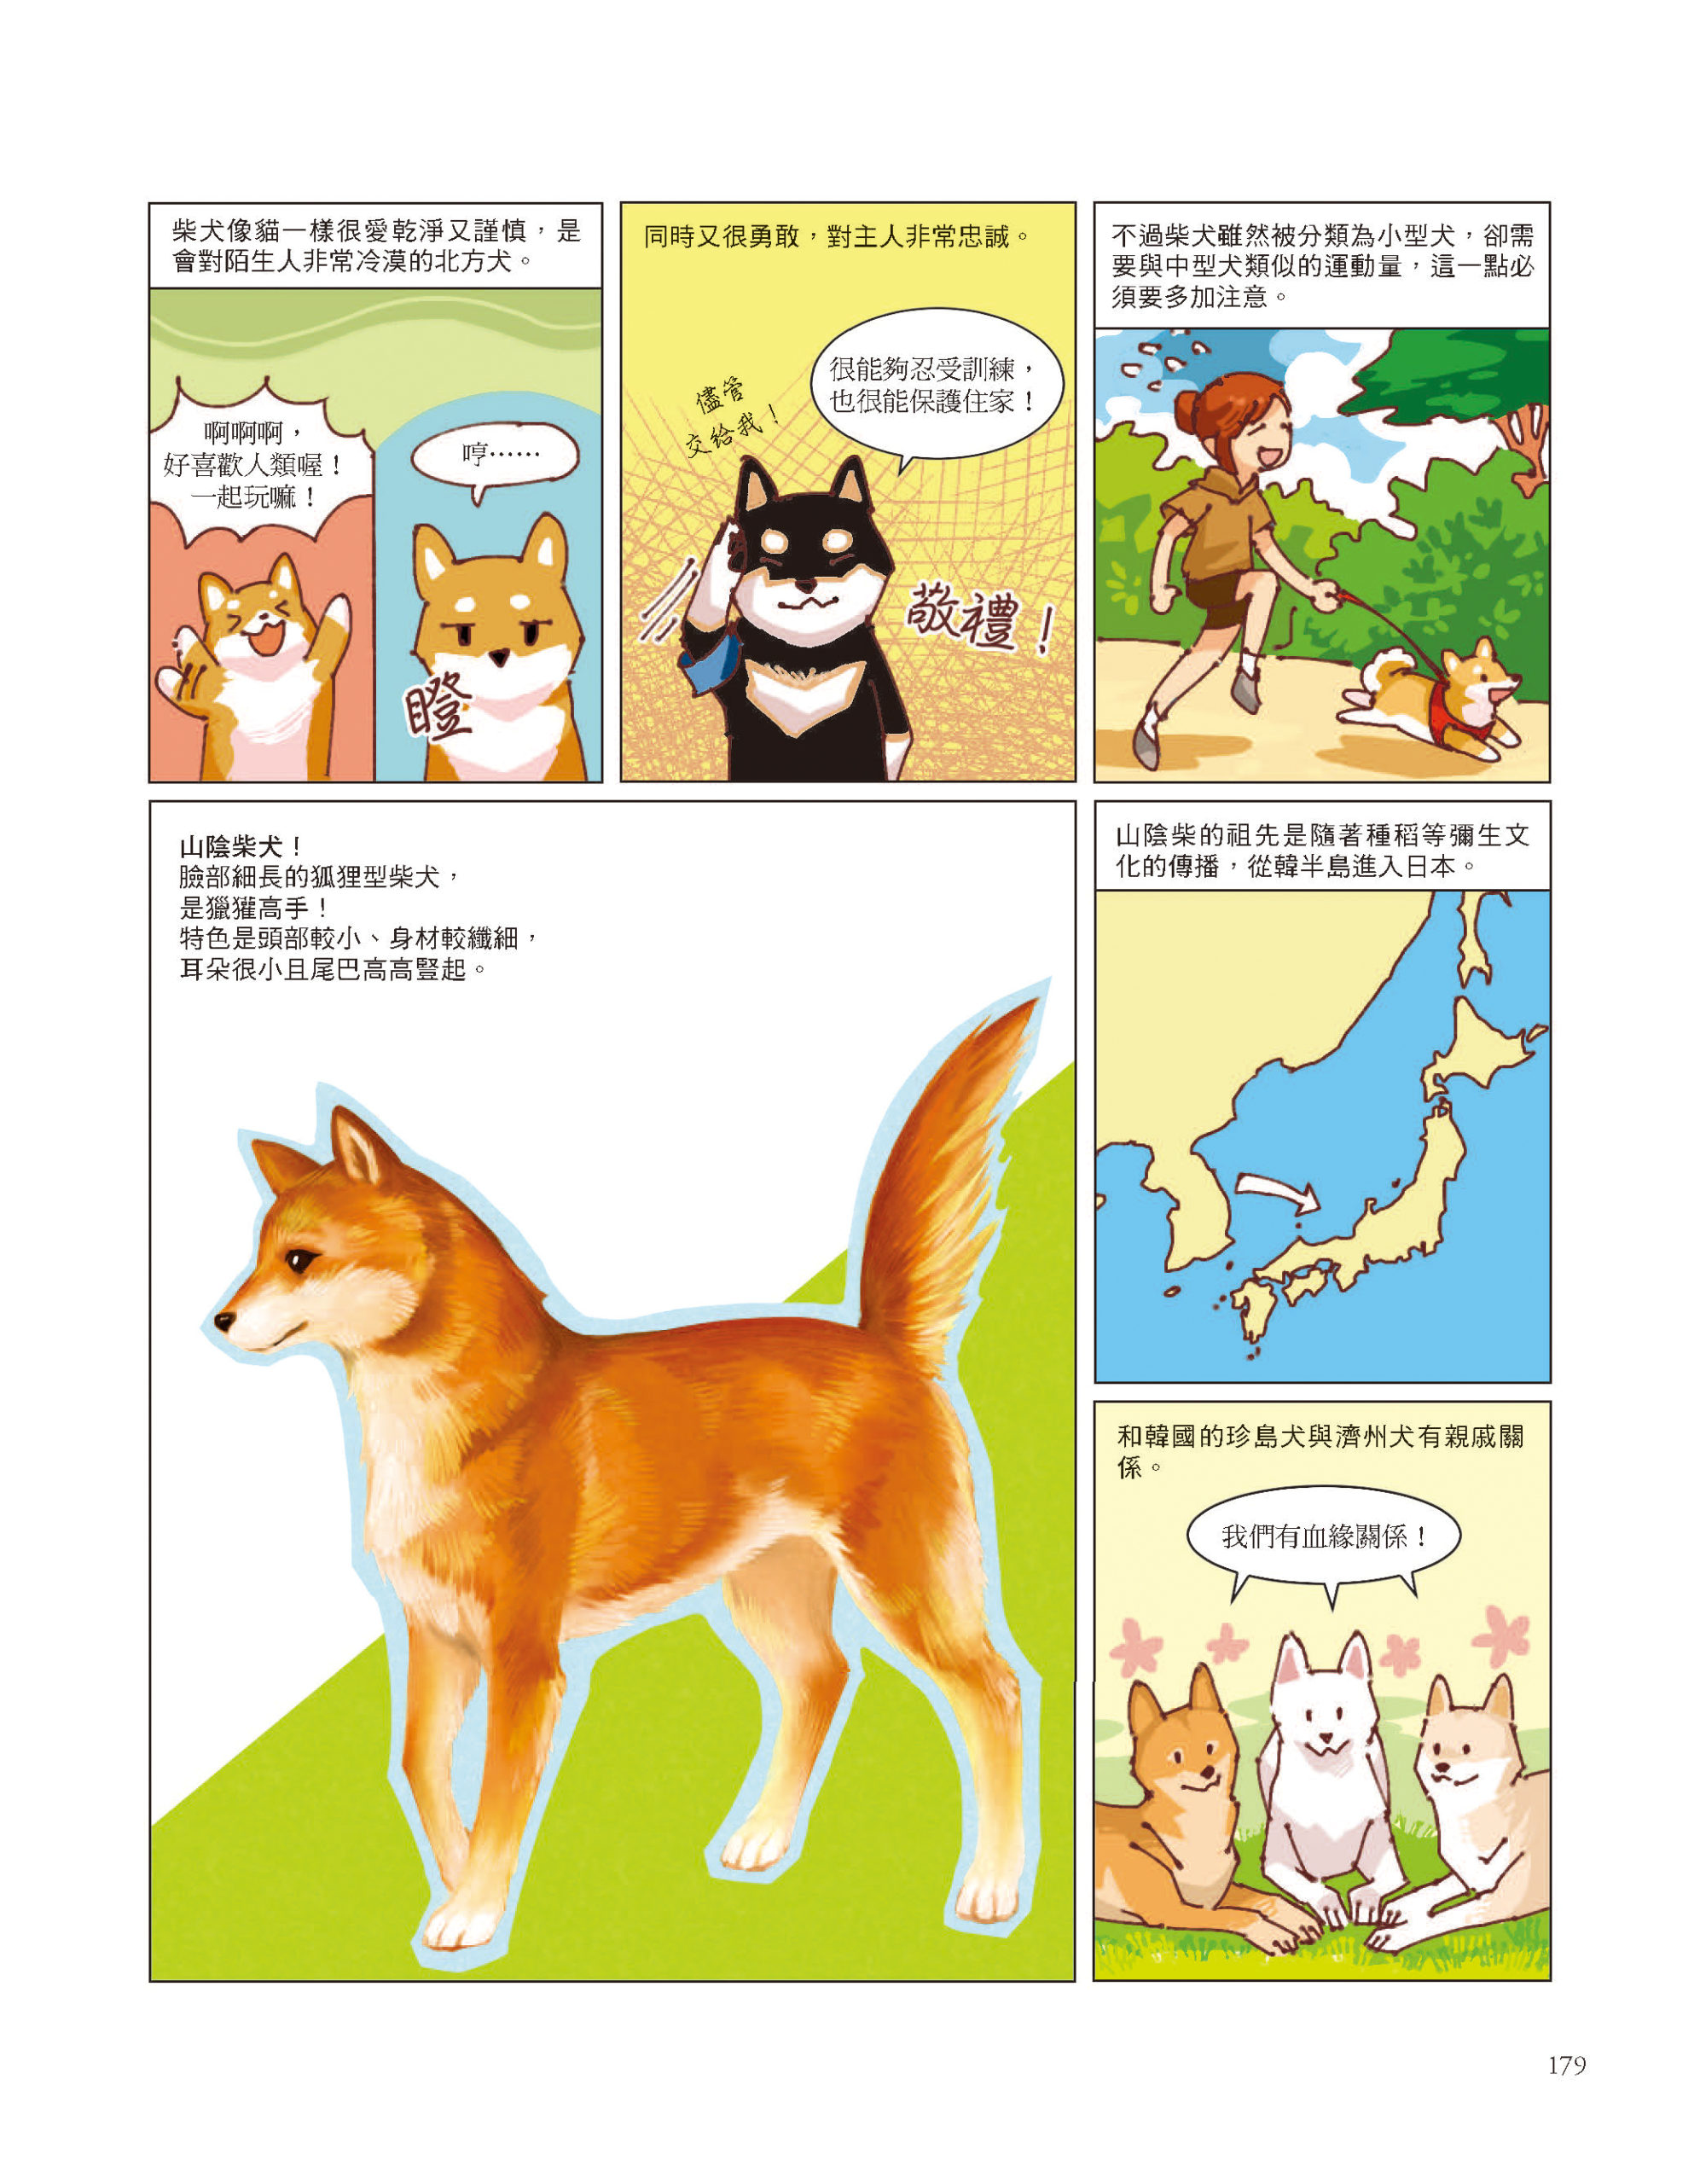 柴犬是日本的天然紀念物　《犬的誕生》一覽柴柴的身世之謎　《犬的誕生》一覽柴柴的身世之謎